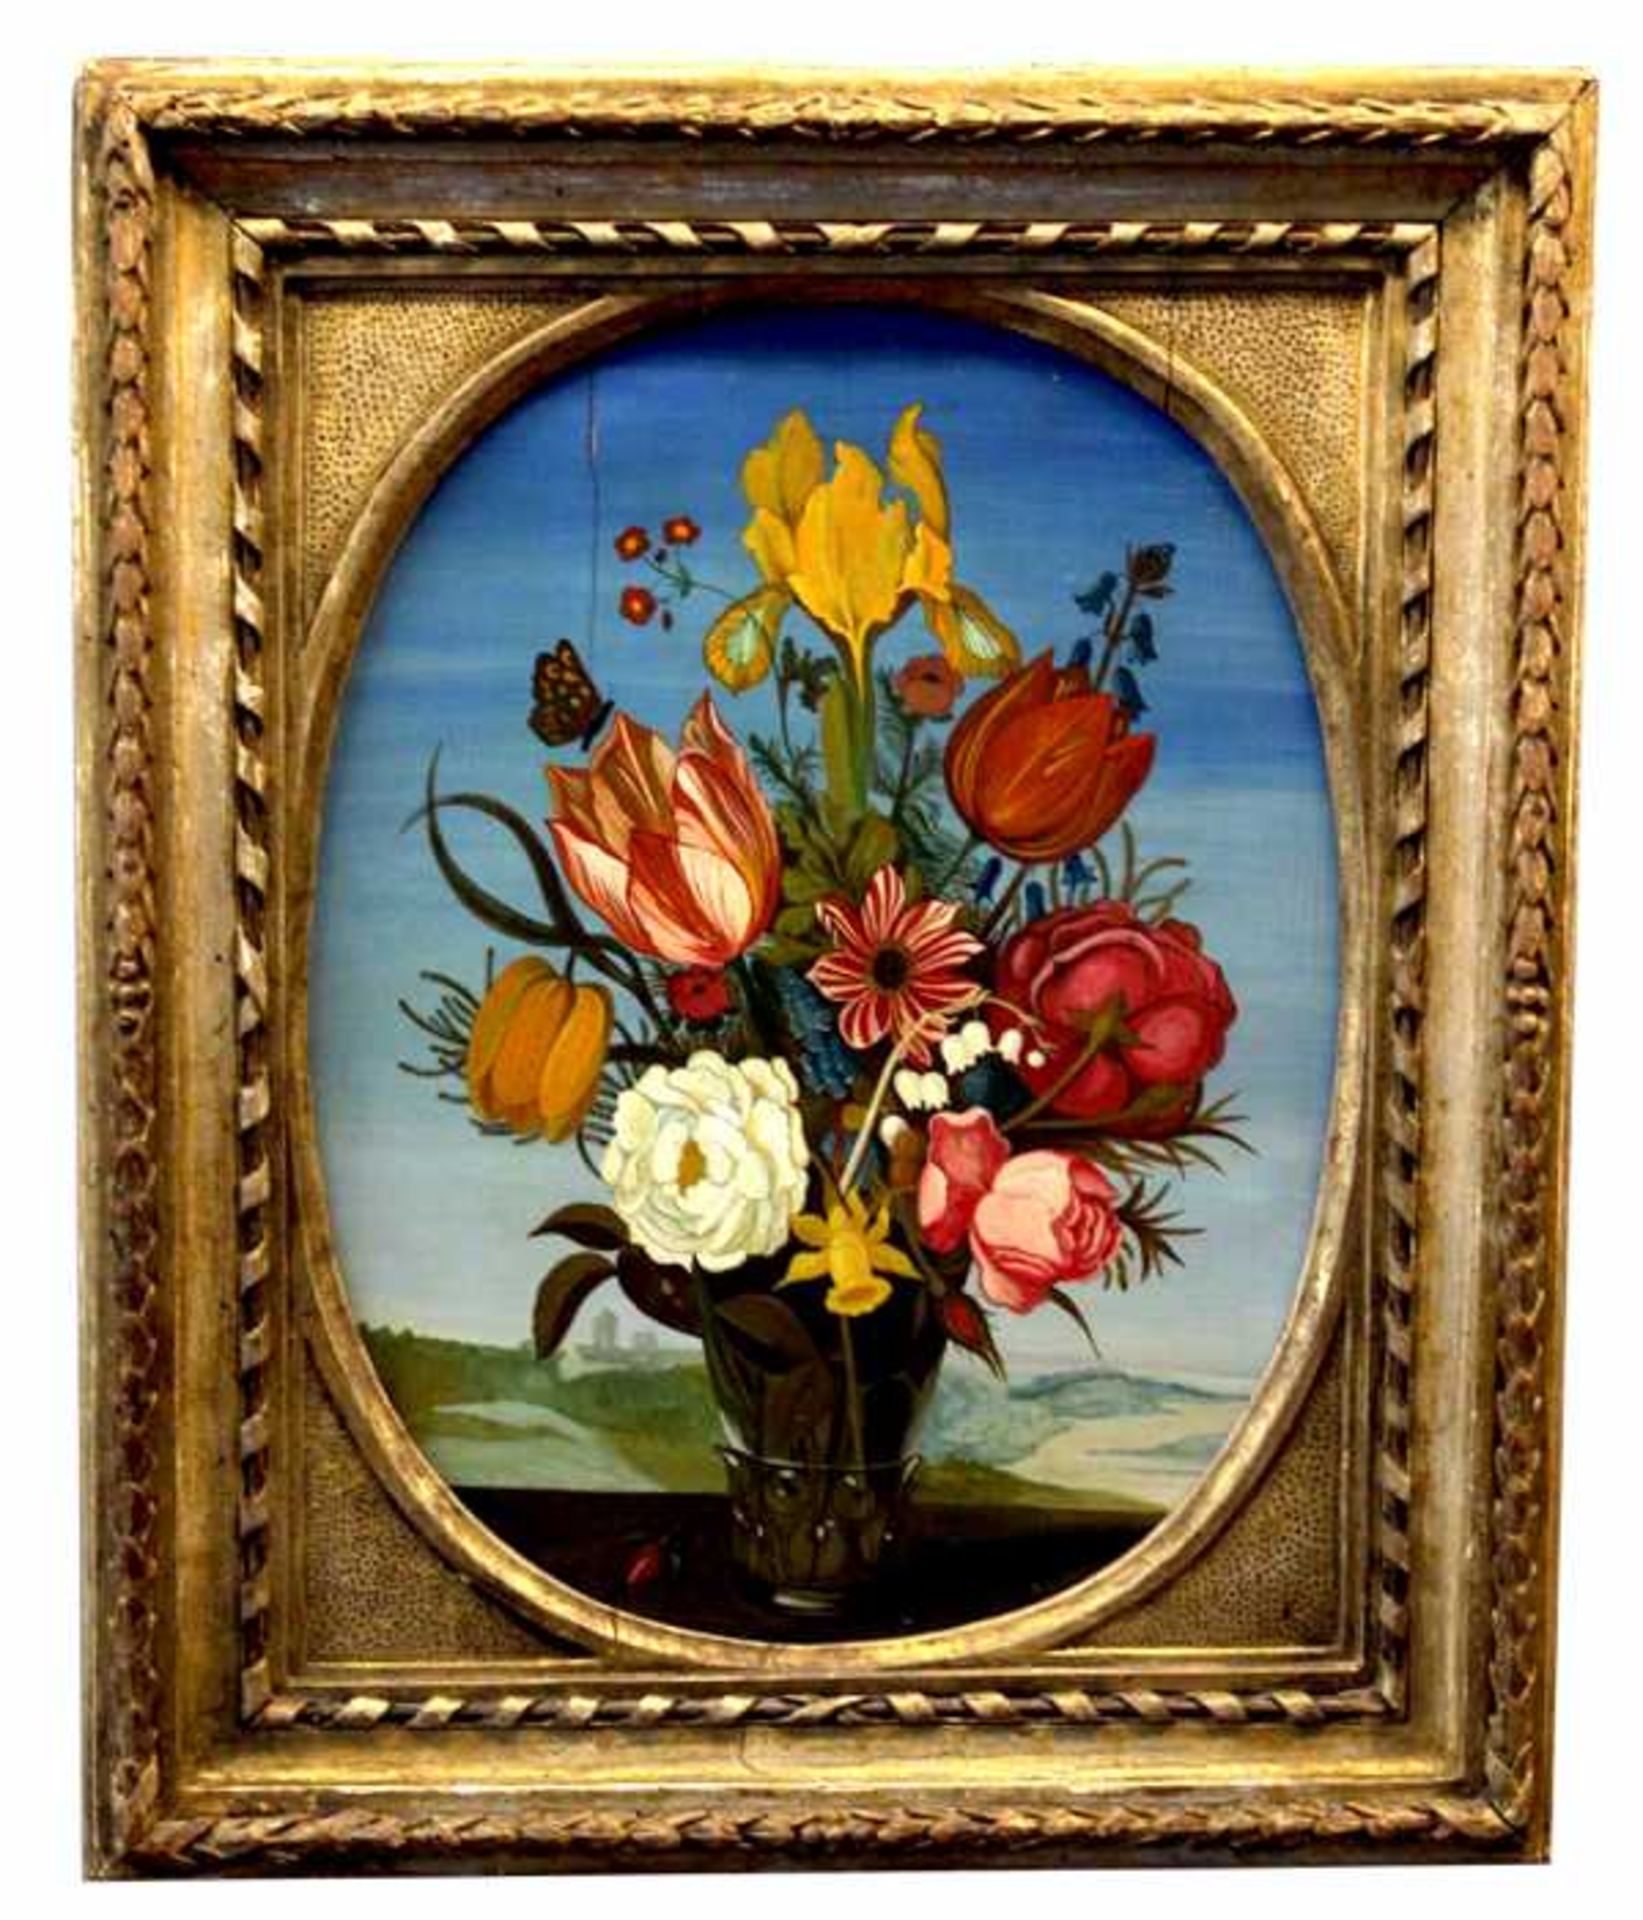 Gemälde im Stil von Ambrosius Bosschaert (1573 Antwerpen - 1621 Den Haag) wohl 19.Jahrhundert, "